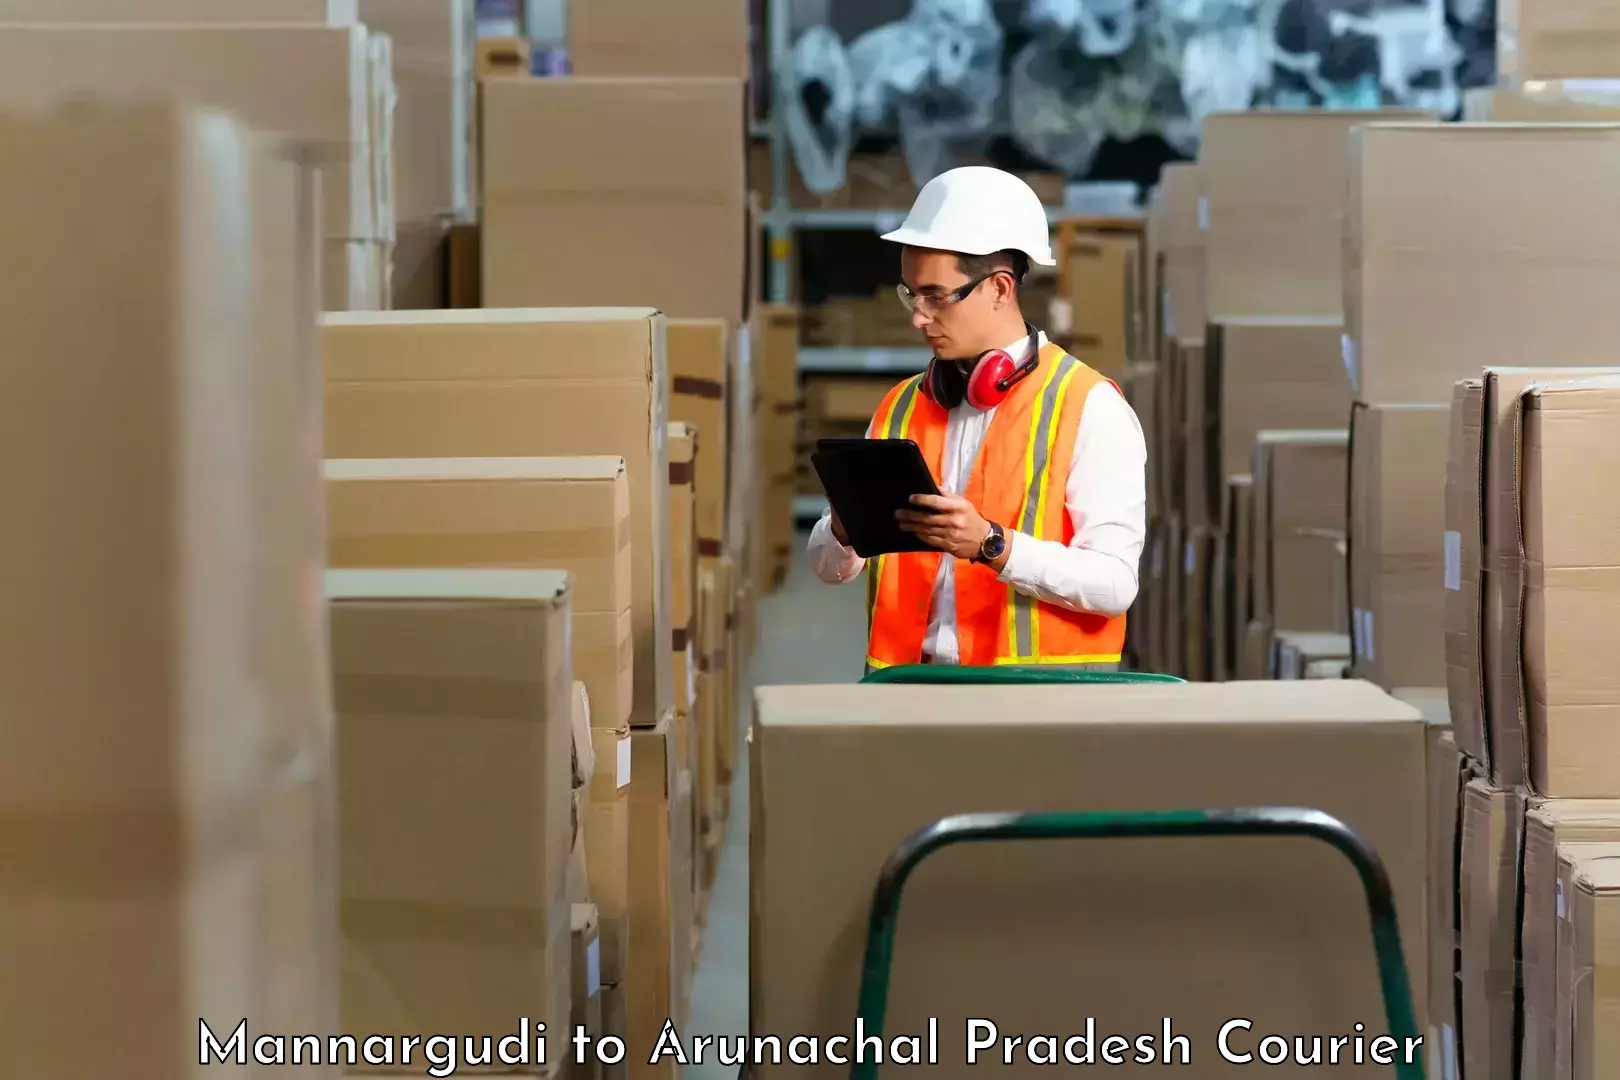 Supply chain delivery Mannargudi to Arunachal Pradesh